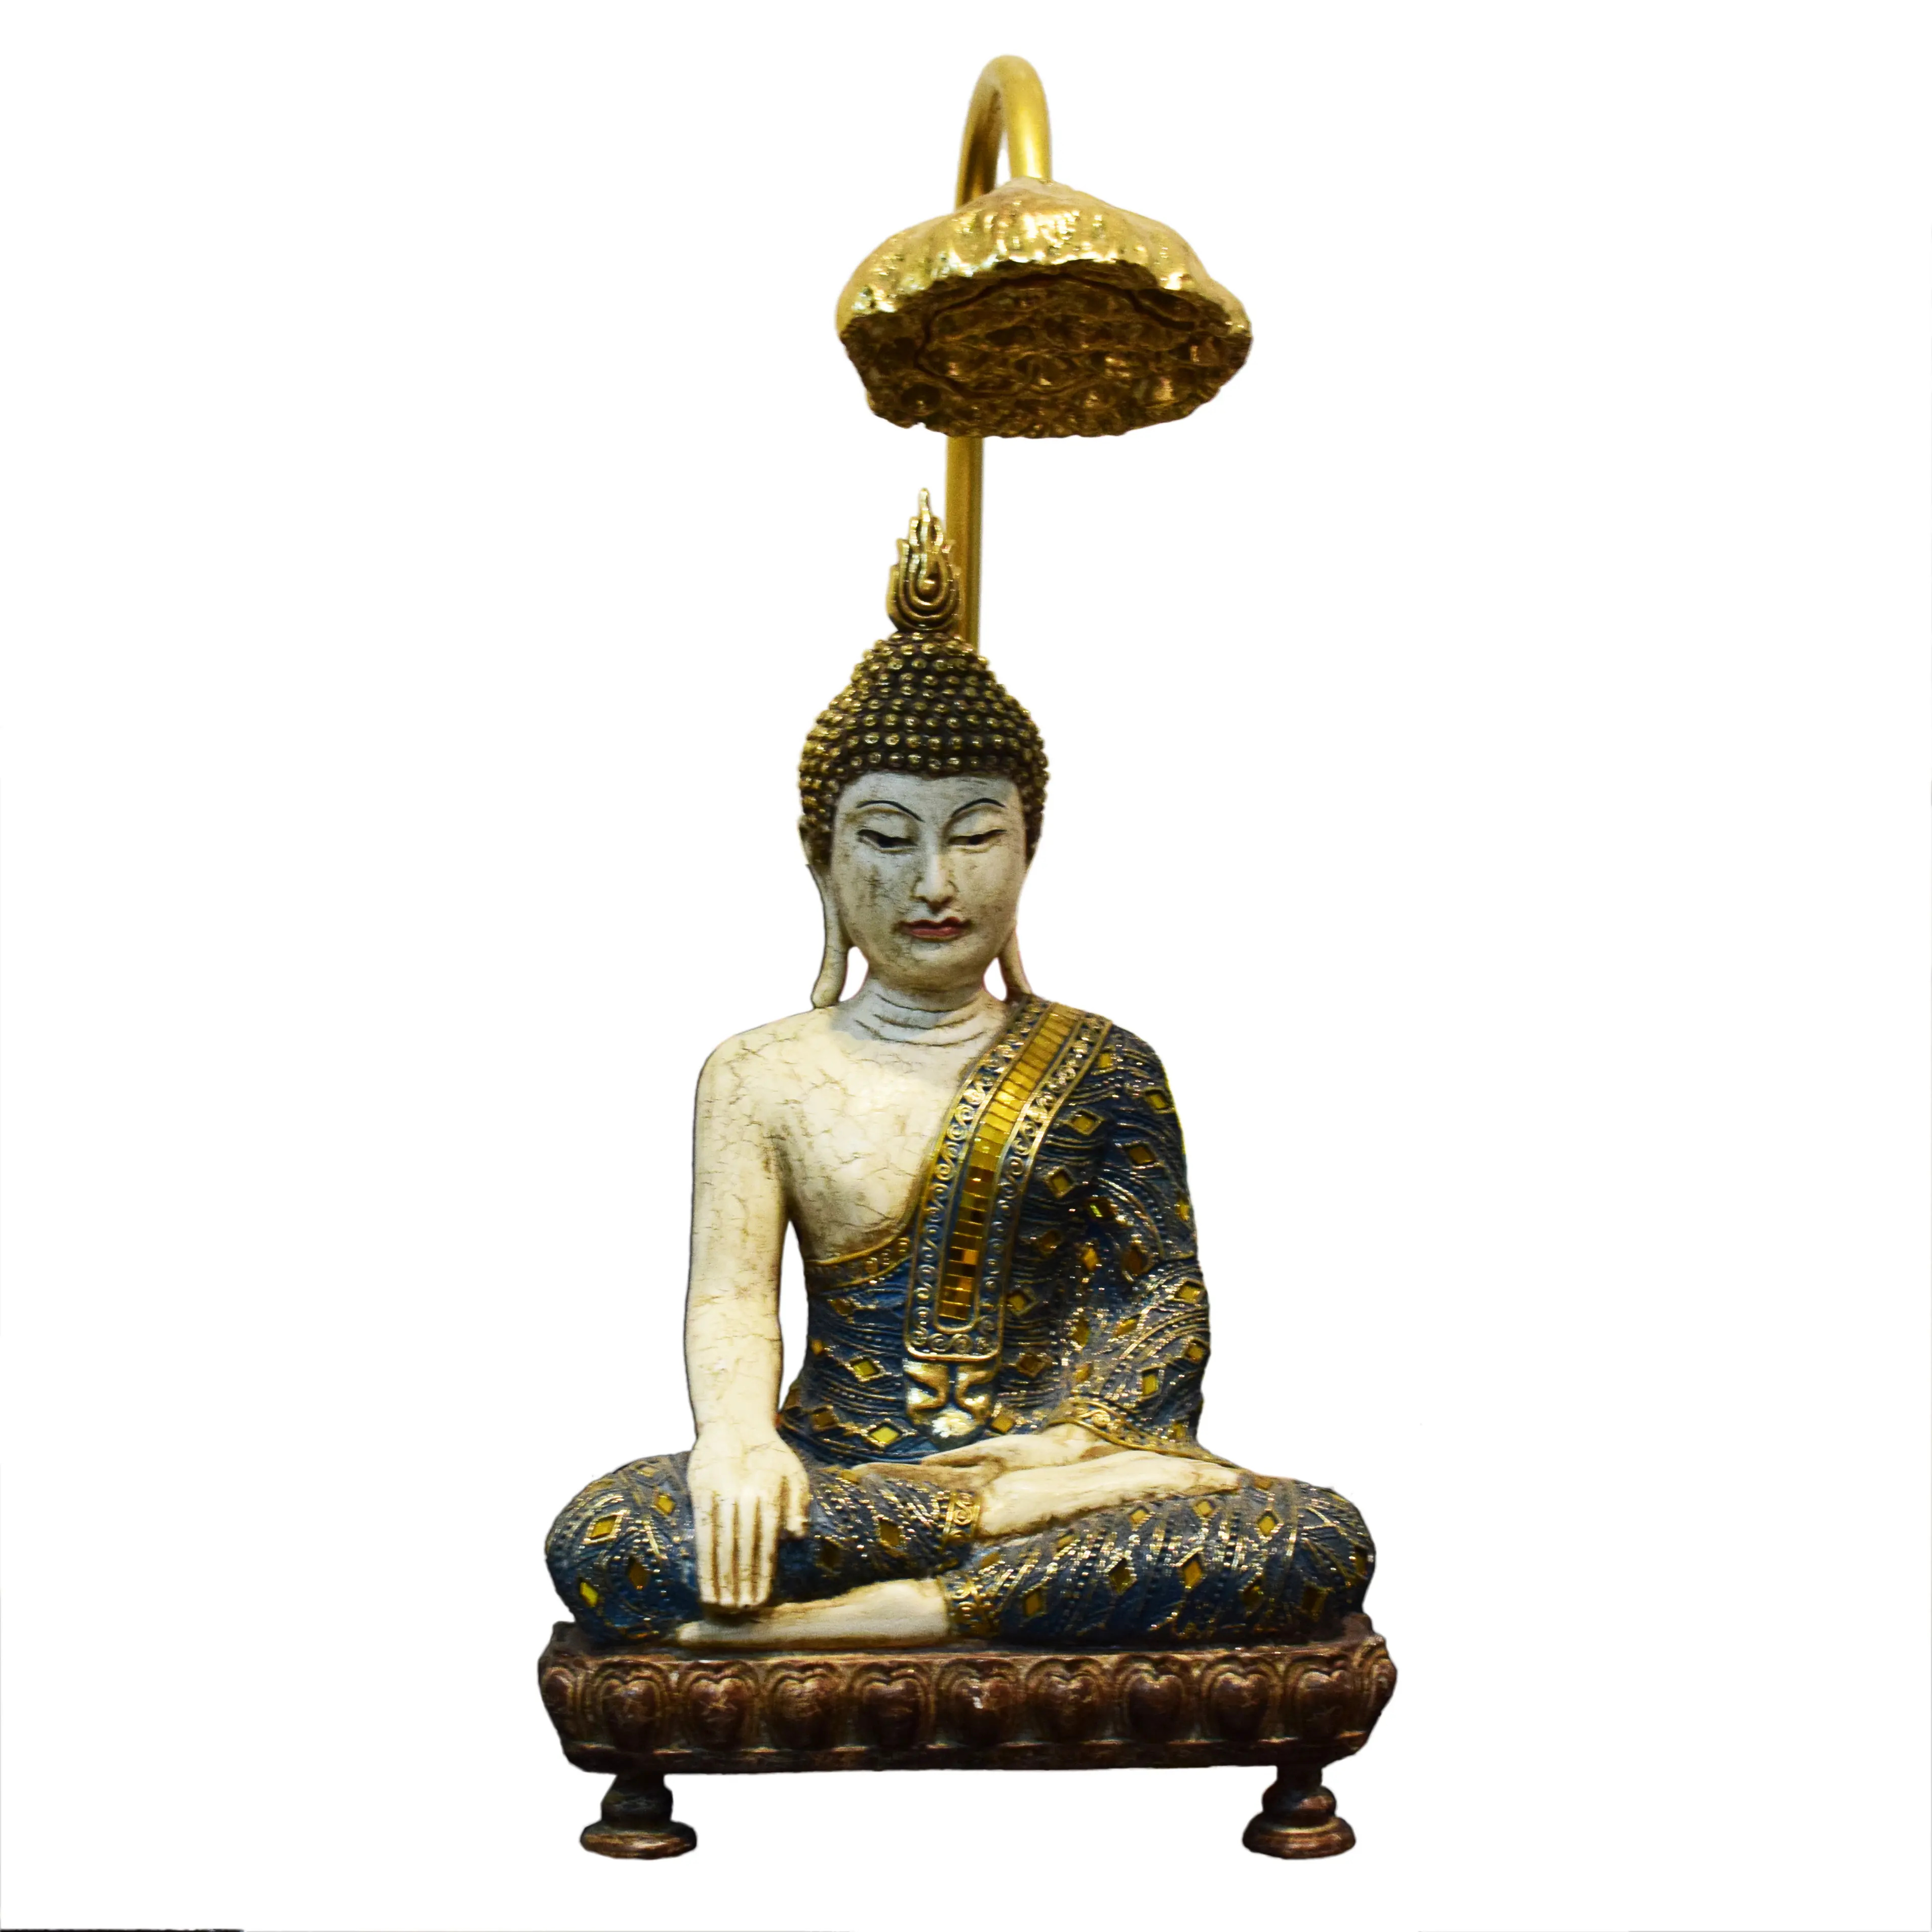 हिन्दू और पूर्व एशियाई सजावट धार्मिक शिल्प बैठे बुद्ध मूर्ति मूर्ति कमल दीपक के साथ